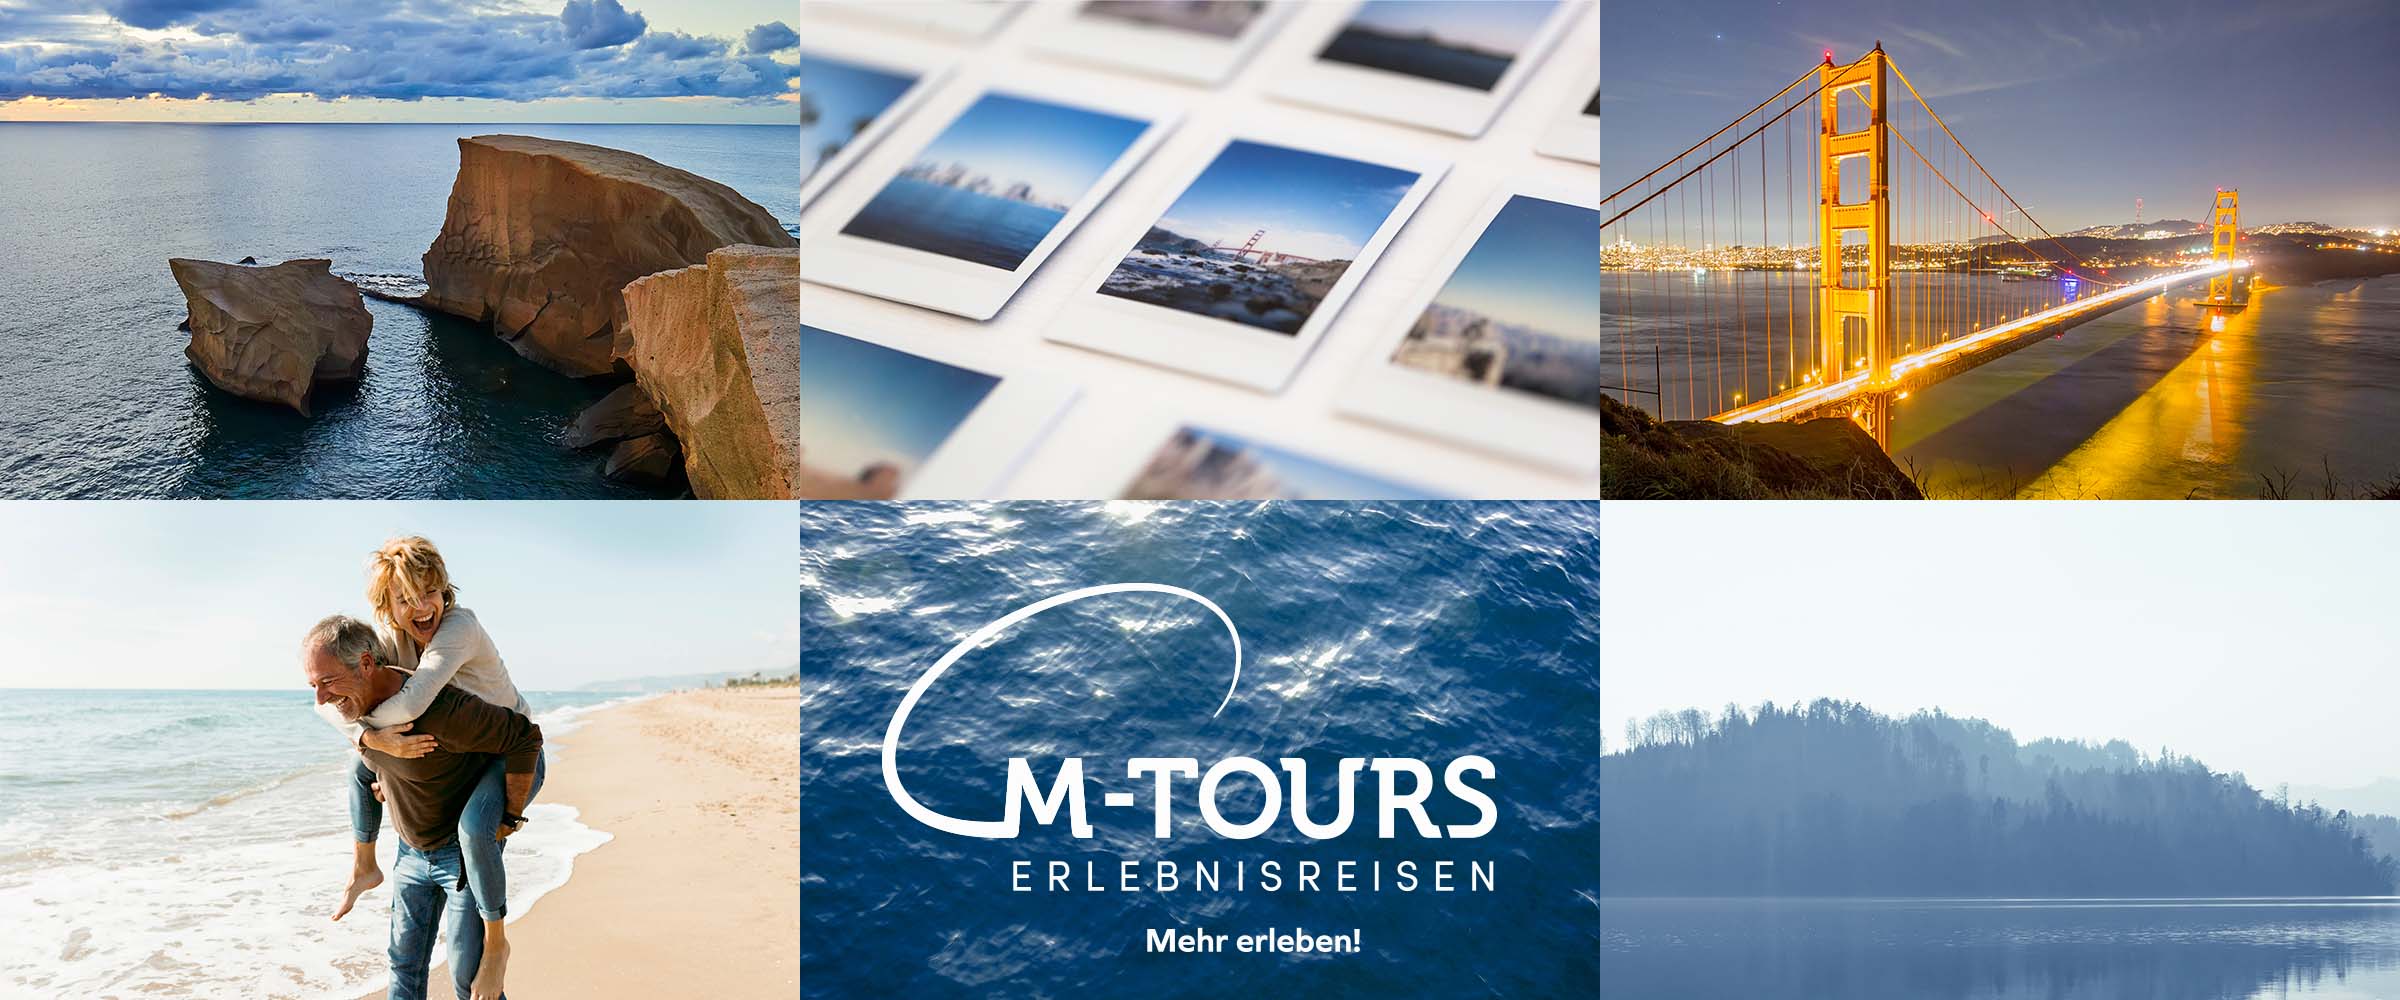 M-TOURS_Banner (c) M-Tours Erlebnisreisen GmbH